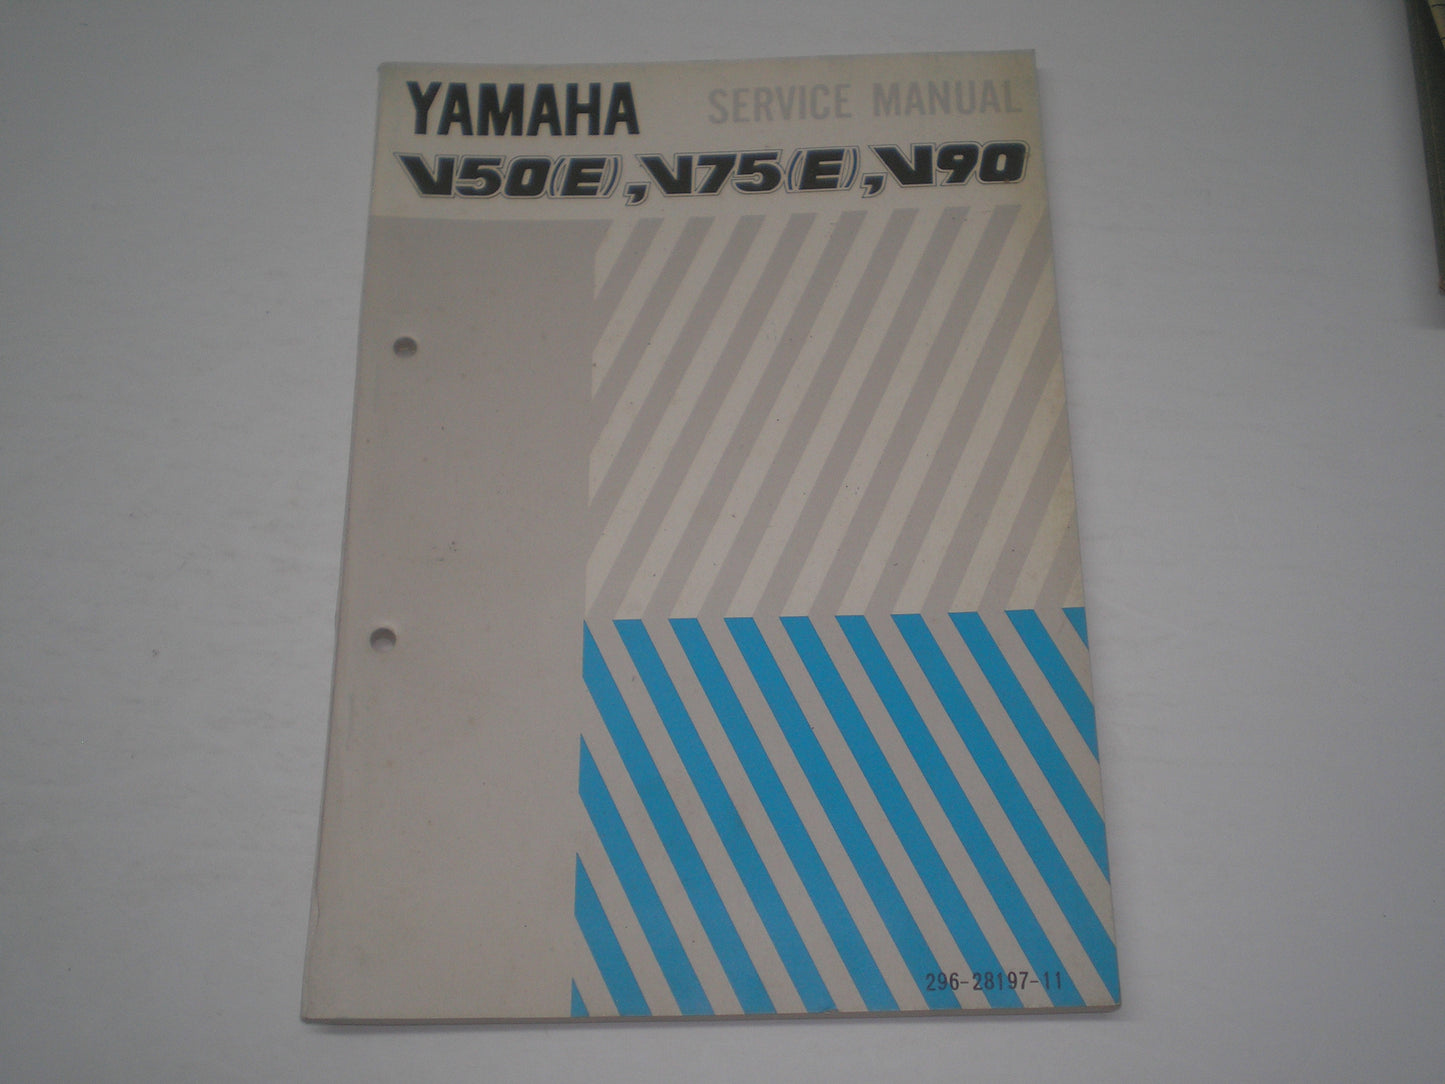 YAMAHA V50 E  V75 E  V90  1975  Service Manual  296-28197-11  #1512